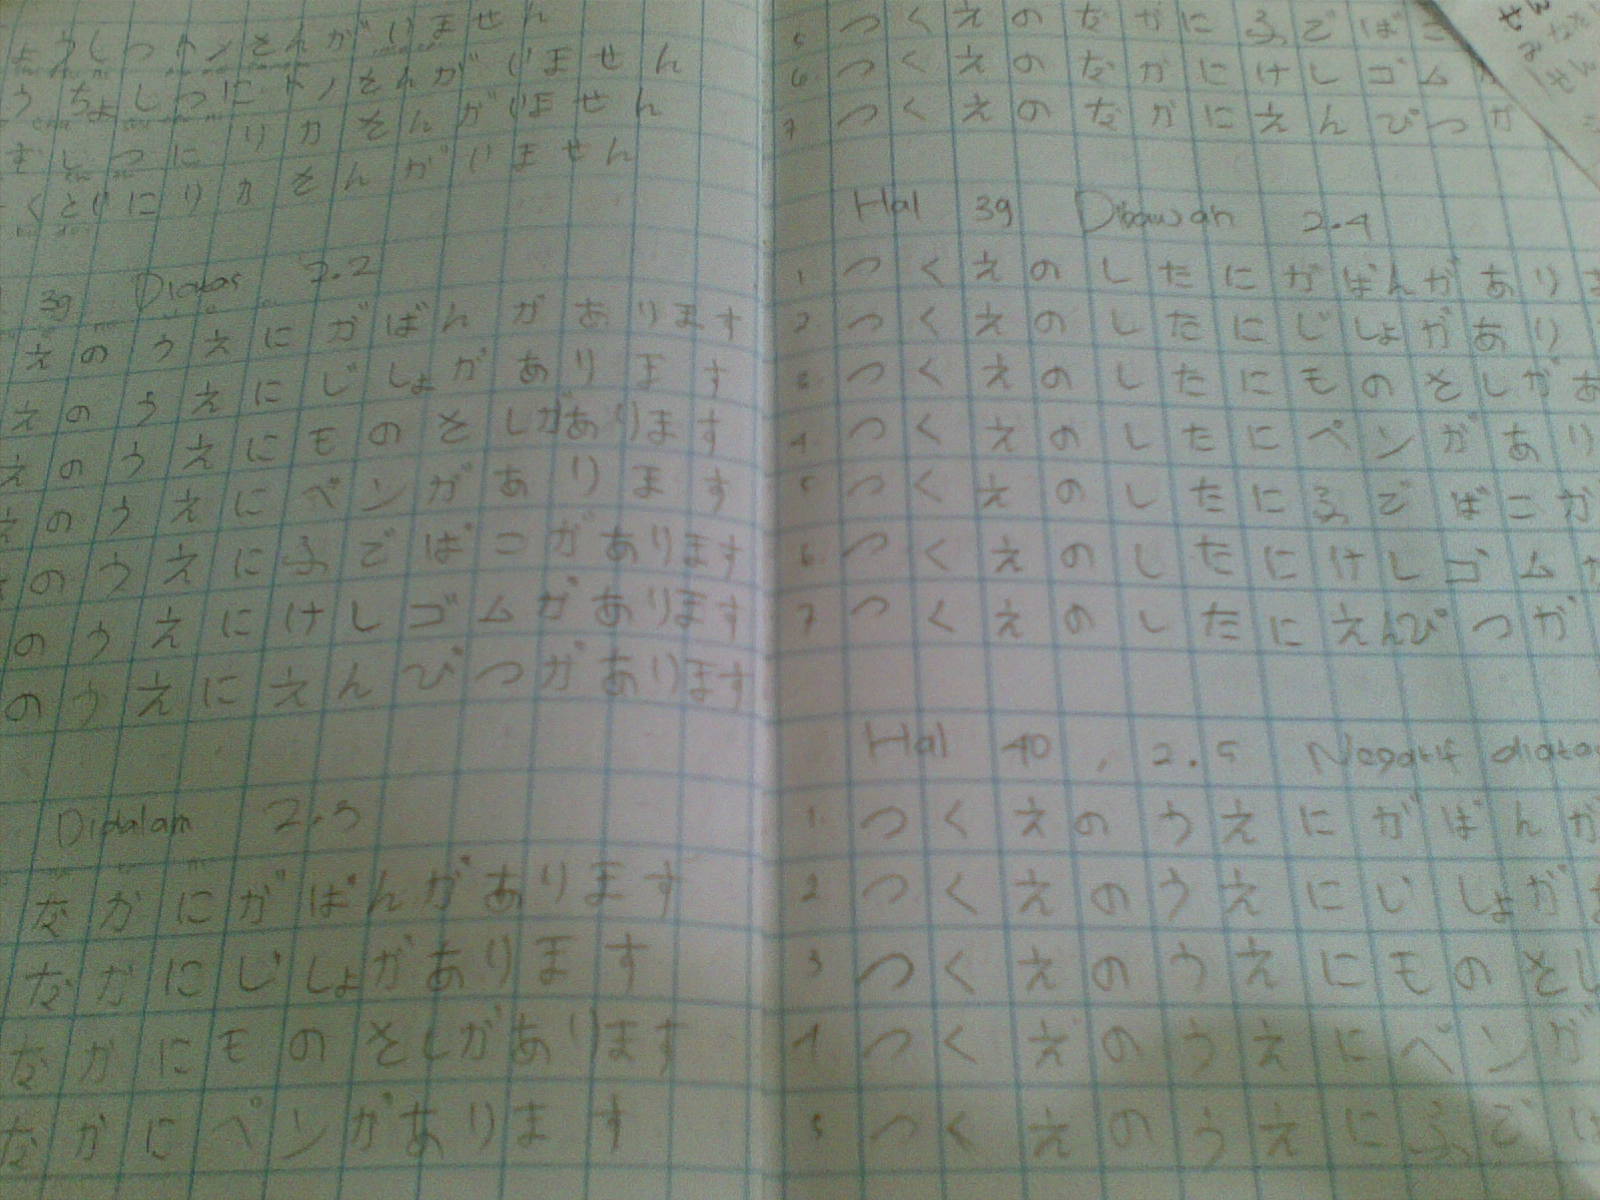 Ini termasuk bagian dari tugas tiap minggunya PR setelah semua hiragana selesai ditulis siaplah tuk katakana nulis dialog drama dalam basa jepang